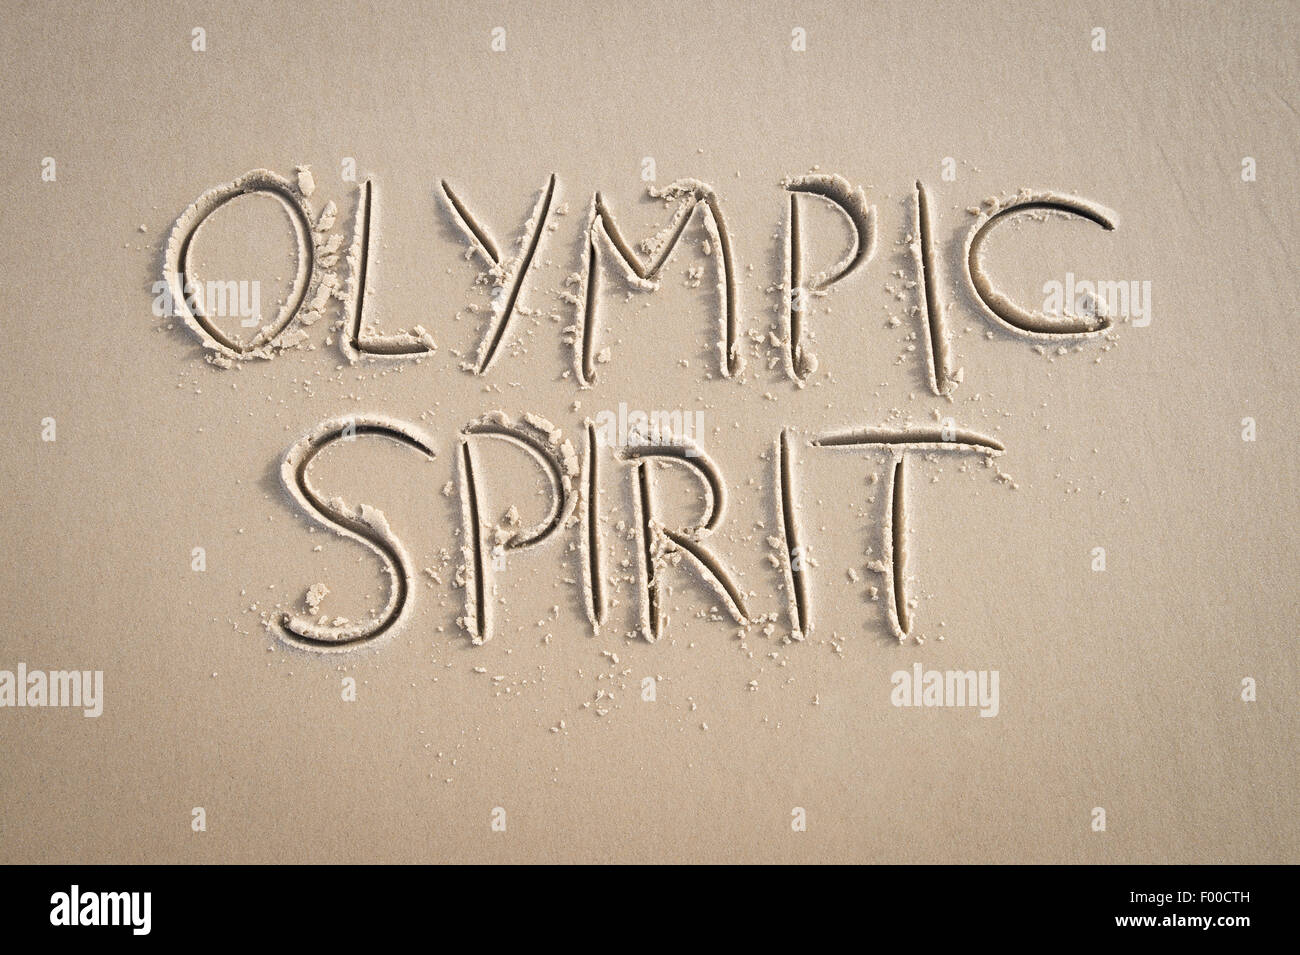 RIO DE JANEIRO, Brasilien - 20. März 2015: Einfache Olympischen Geist Botschaft handschriftlich in sauberen Text auf glatte Sandstrand. Stockfoto